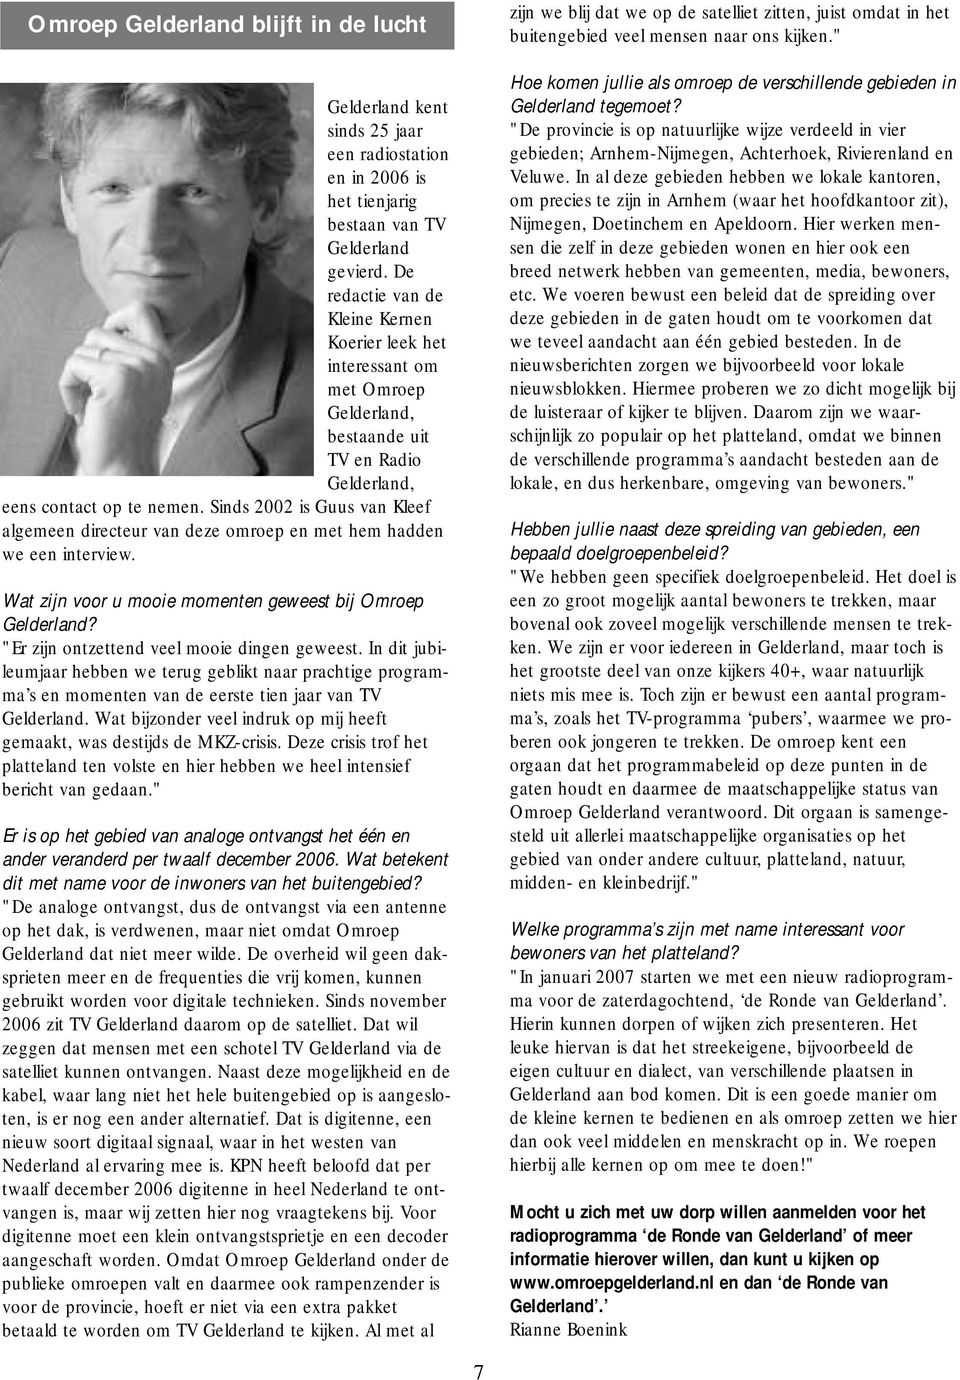 Sinds 2002 is Guus van Kleef algemeen directeur van deze omroep en met hem hadden we een interview. Wat zijn voor u mooie momenten geweest bij Omroep Gelderland?